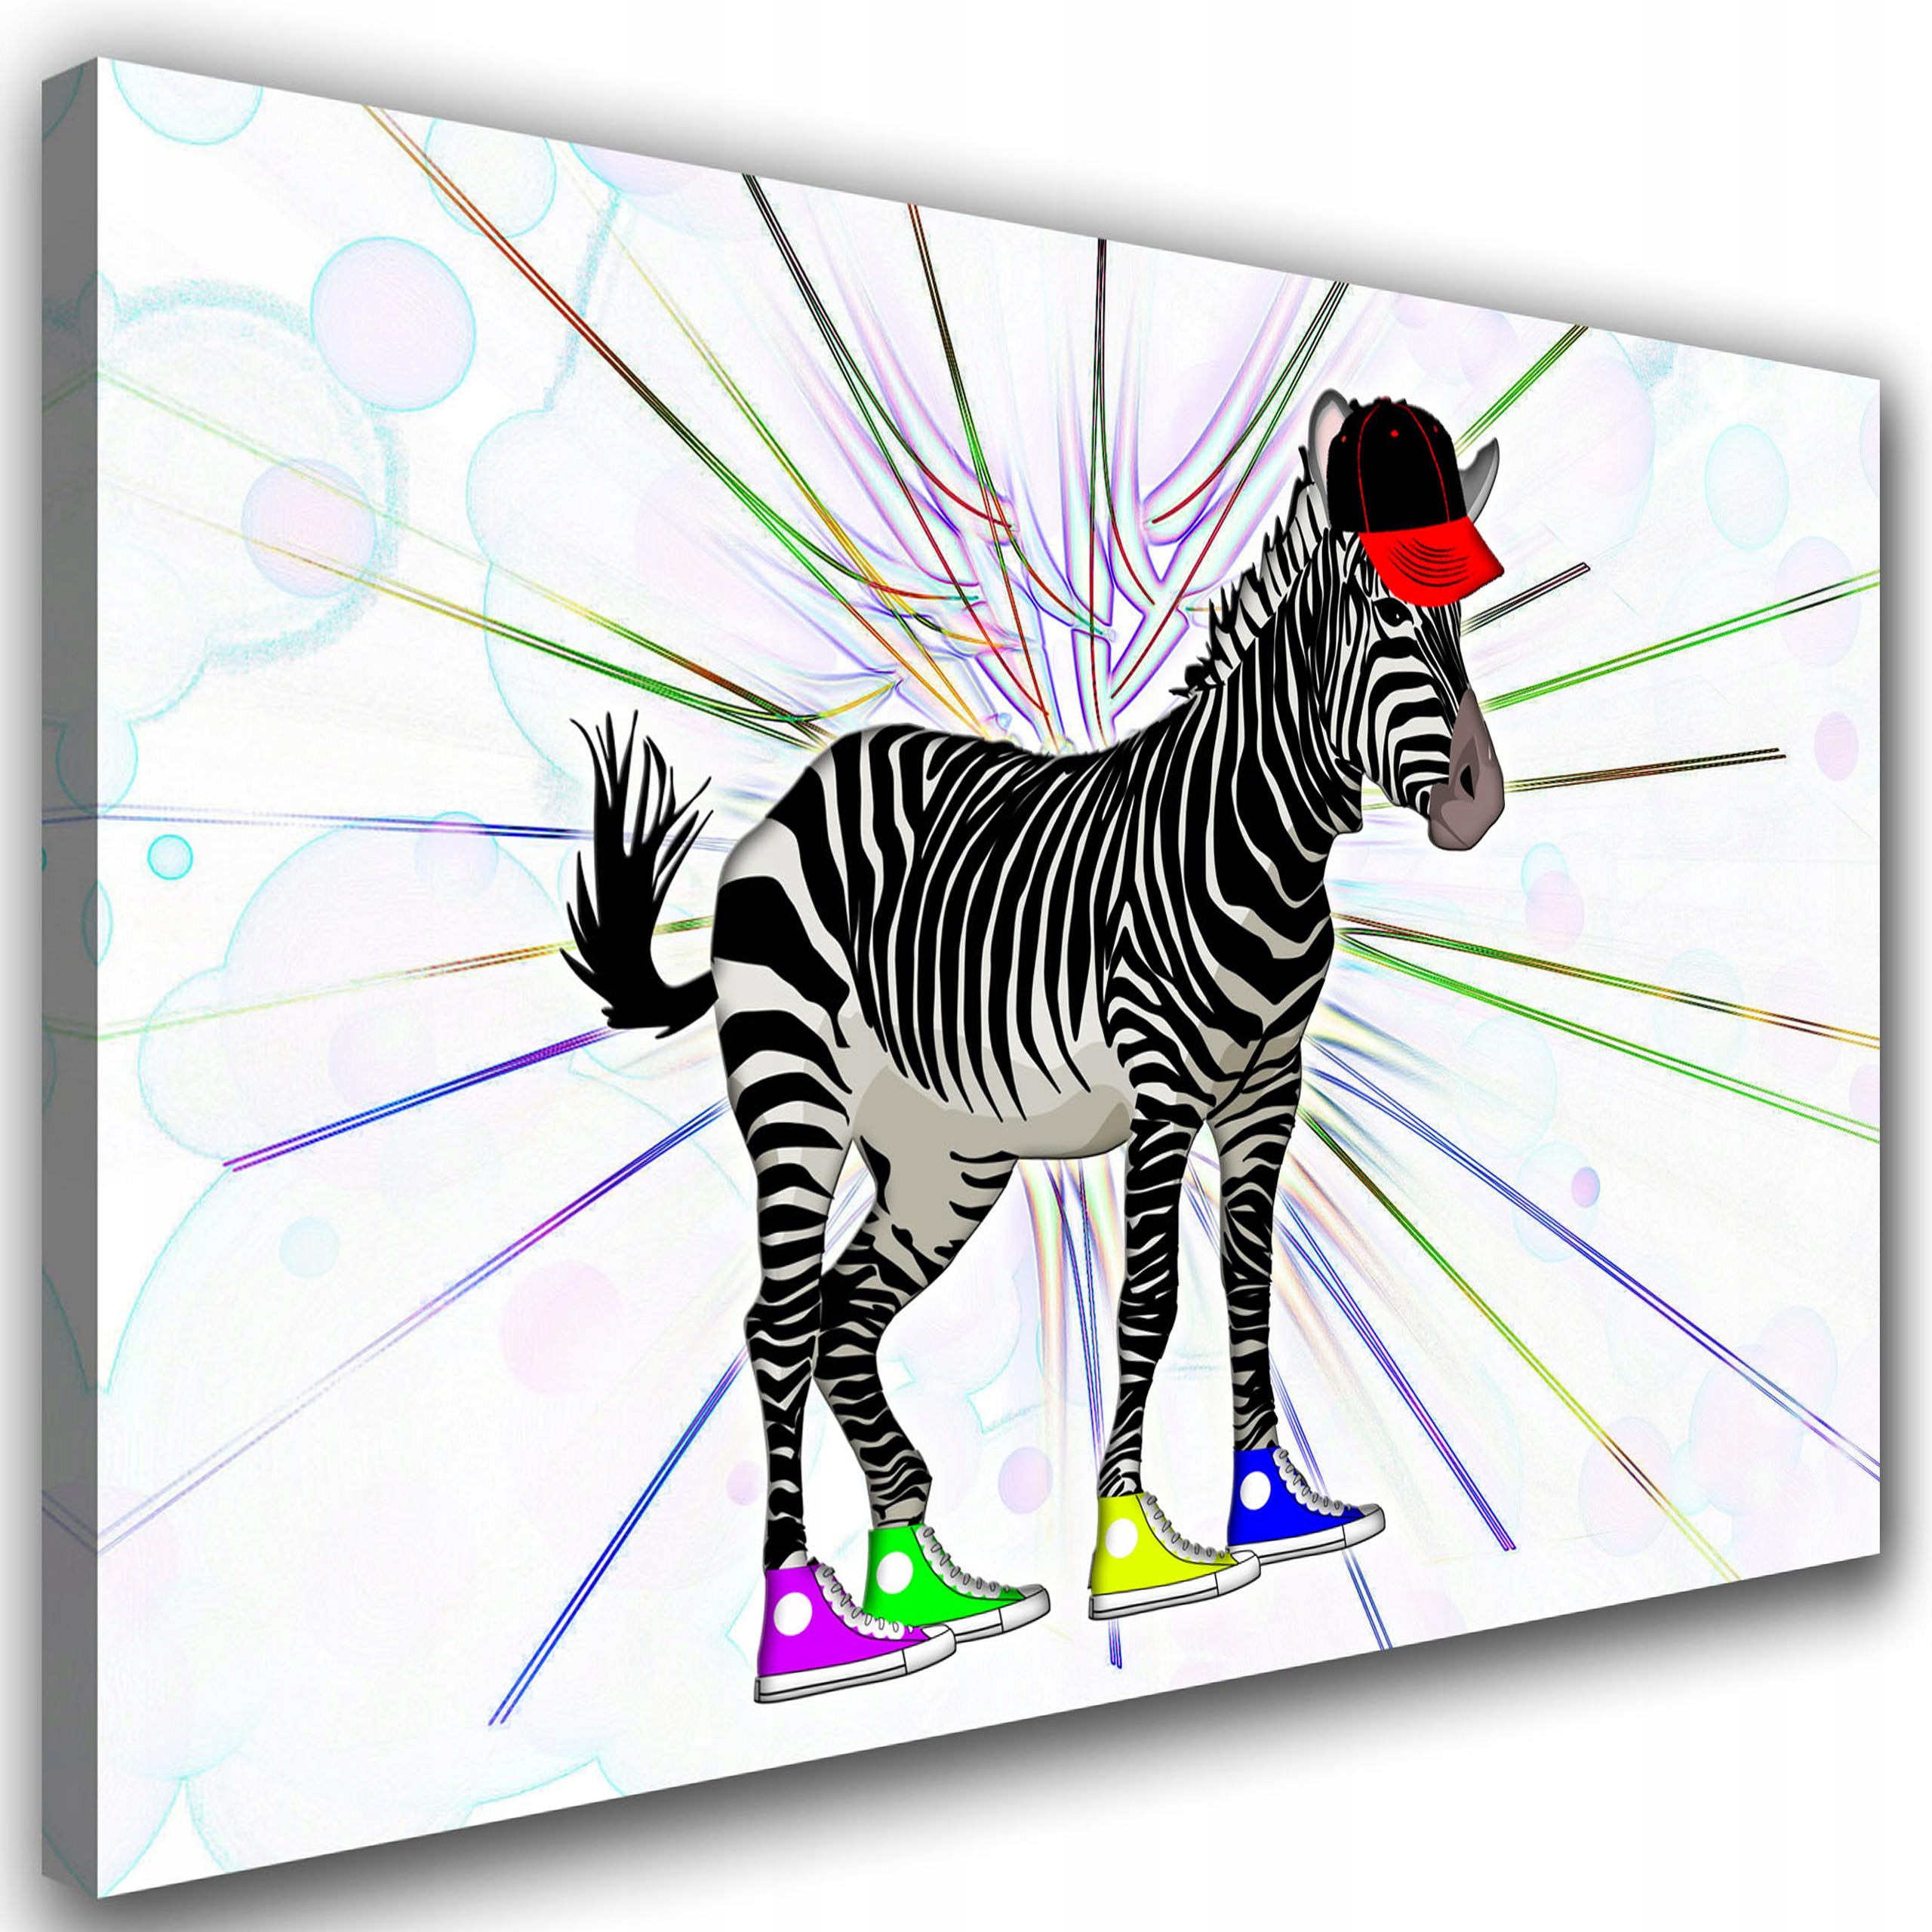 Зебра с цветными полосками